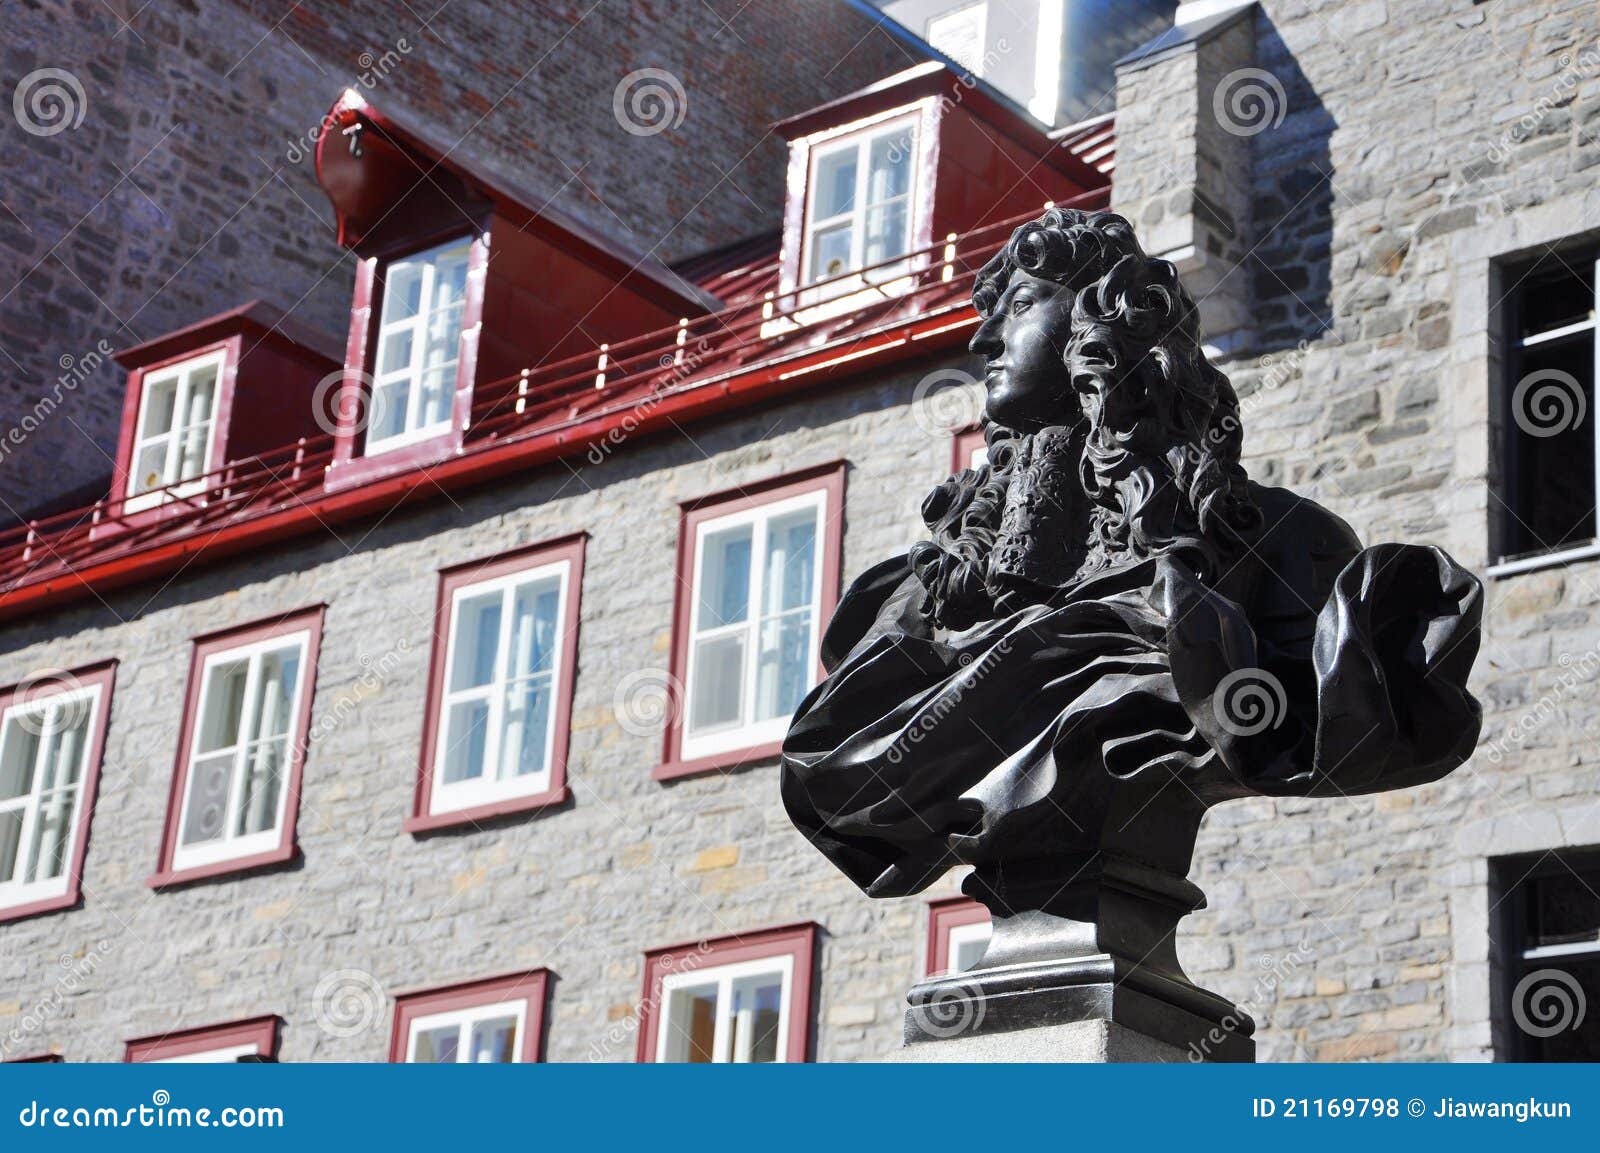 king louis xiv statue, place royale, quebec city